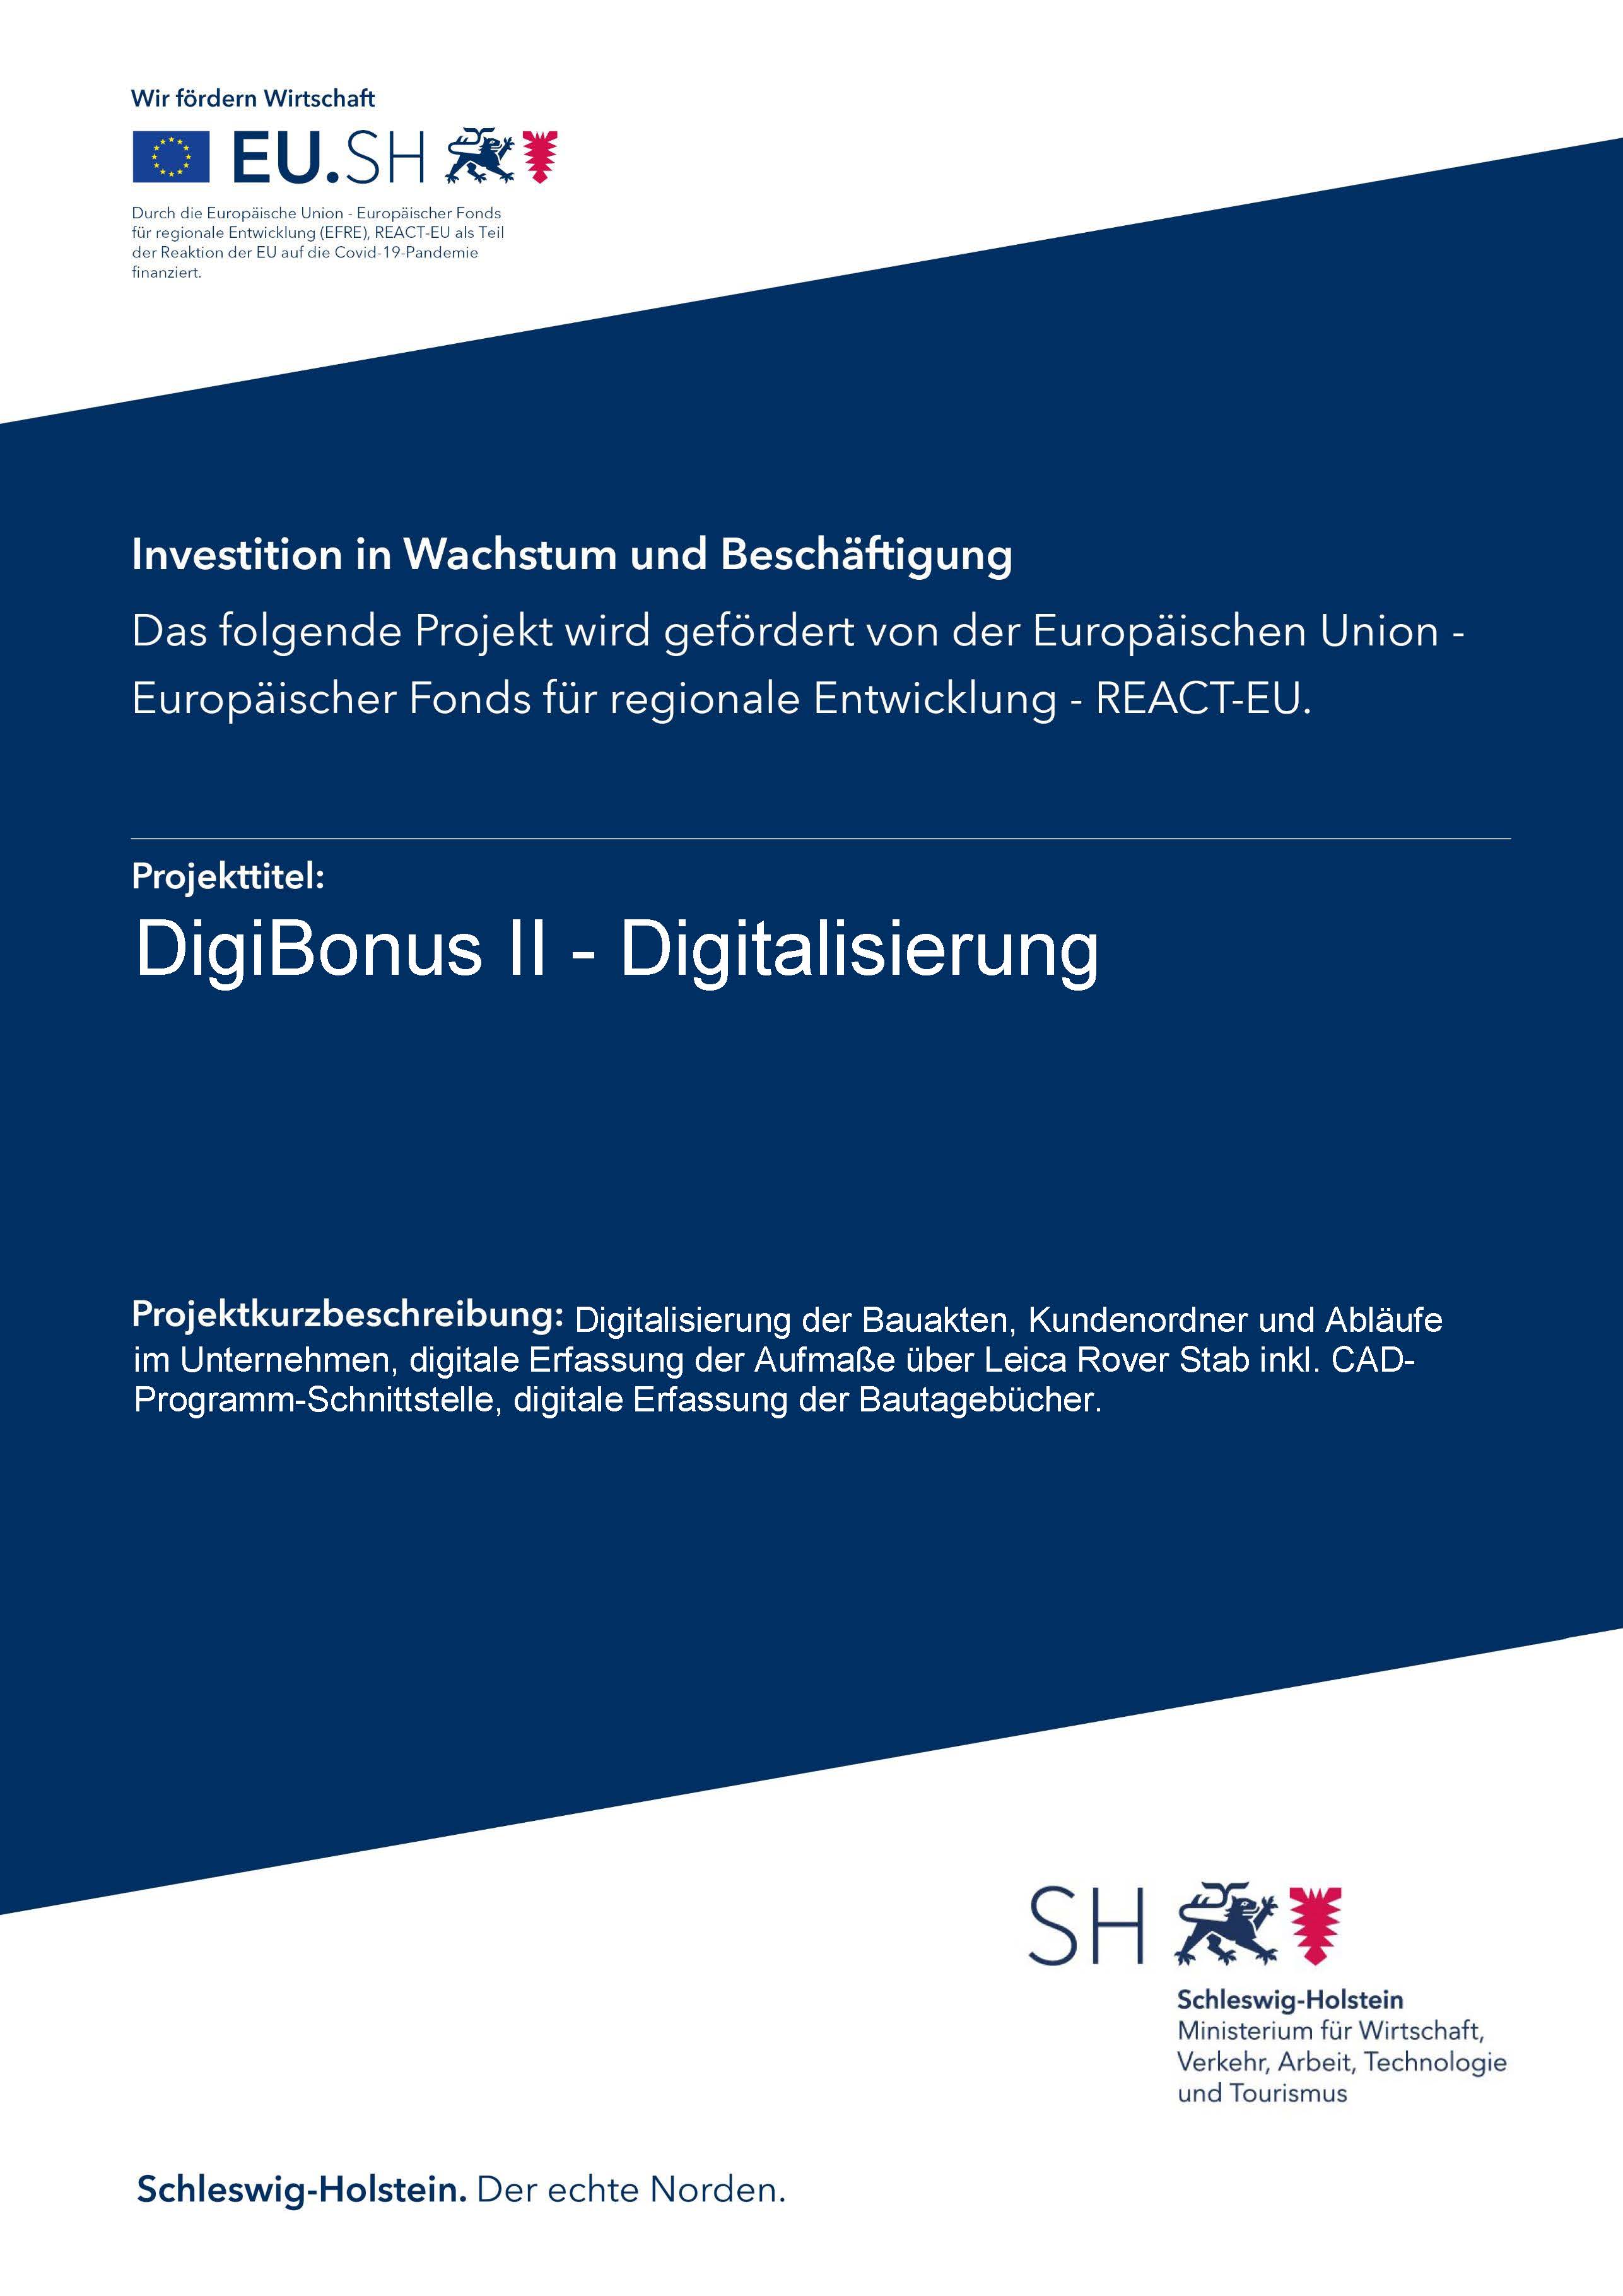 DigiBonus || - Digitalisierung